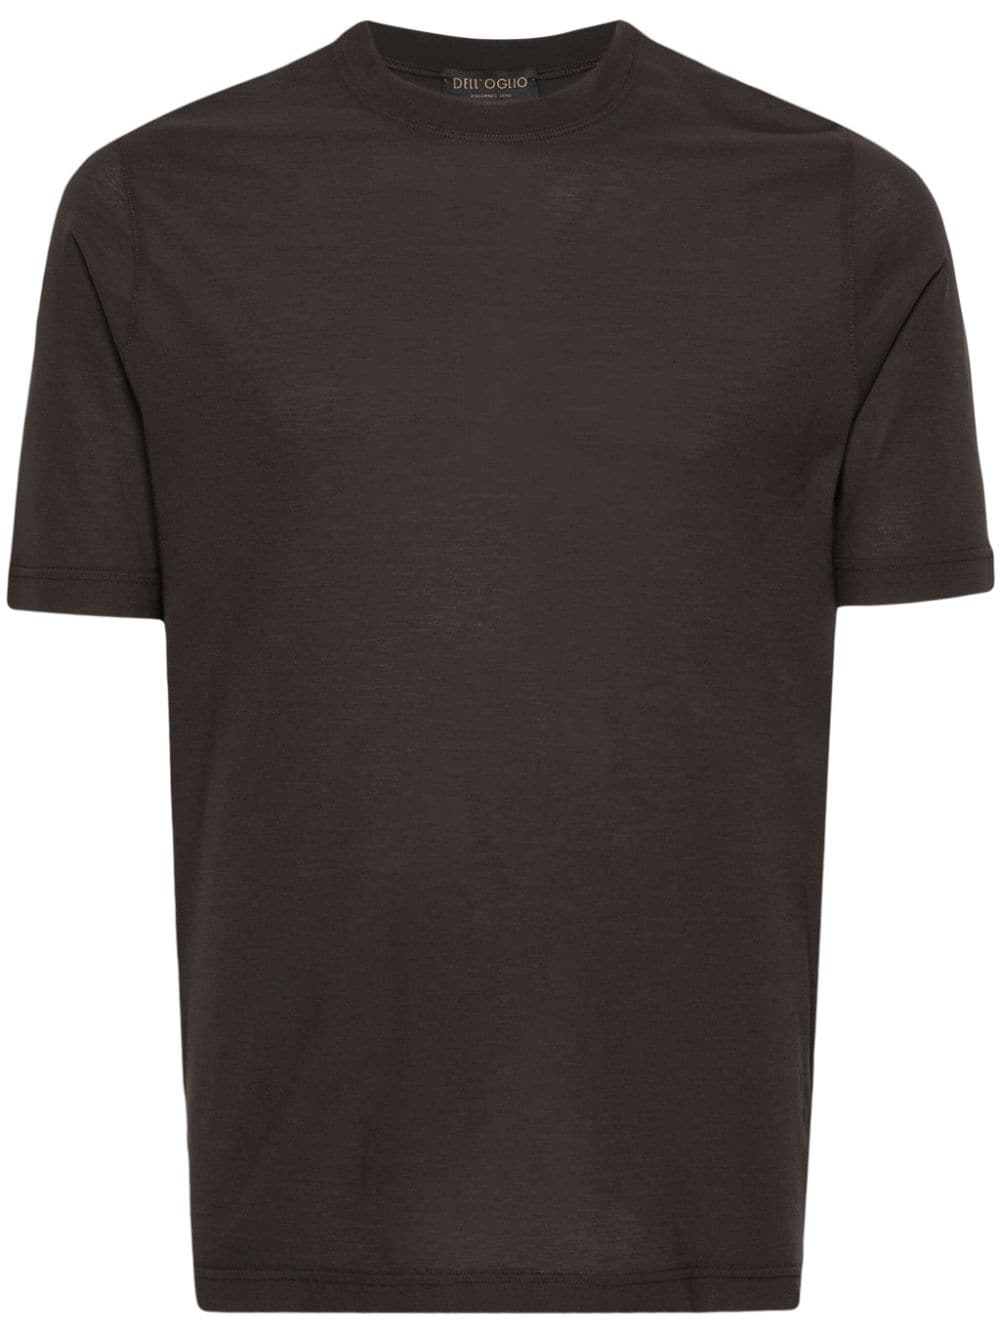 Image 1 of Dell'oglio crew-neck cotton T-shirt